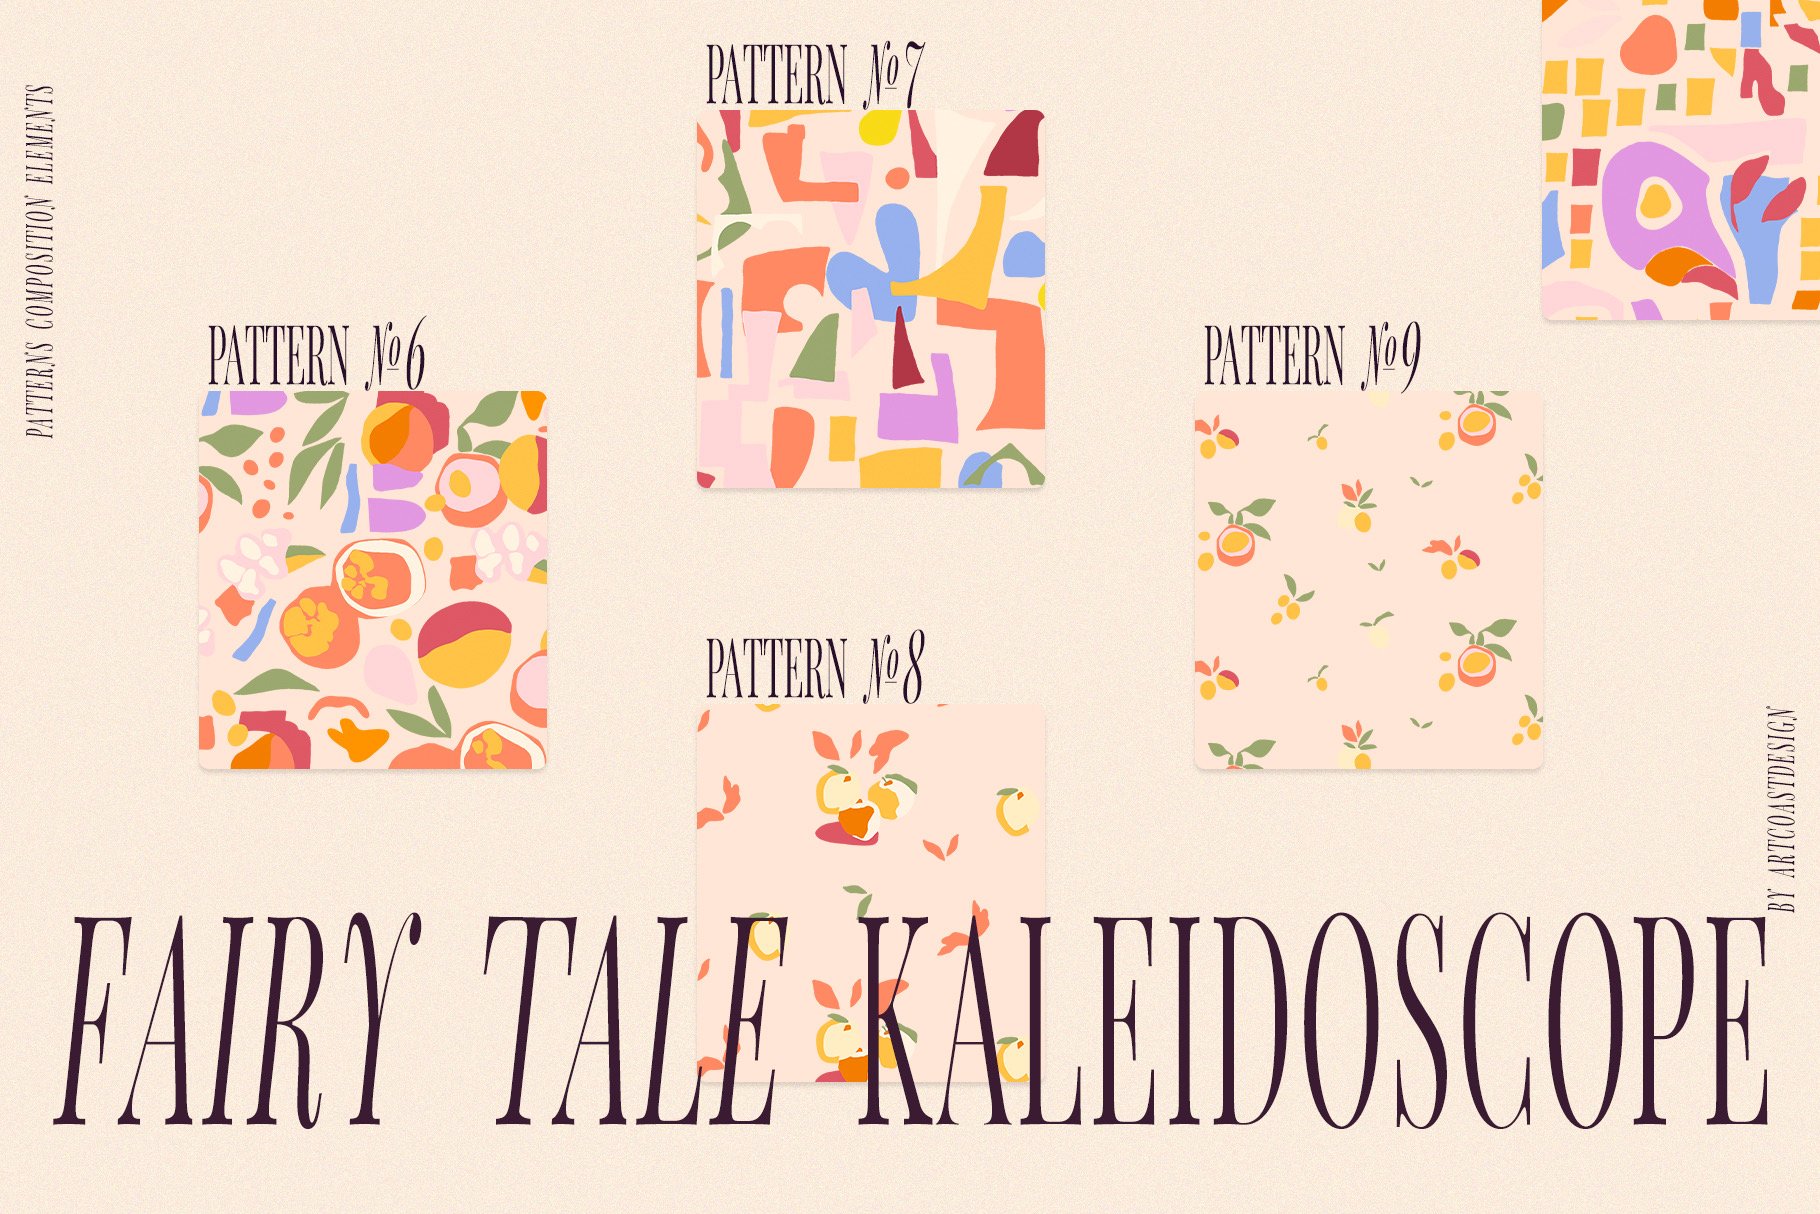 Fairy-Tale-Kaleidoscope-Vector-Art-Patterns-10.jpeg